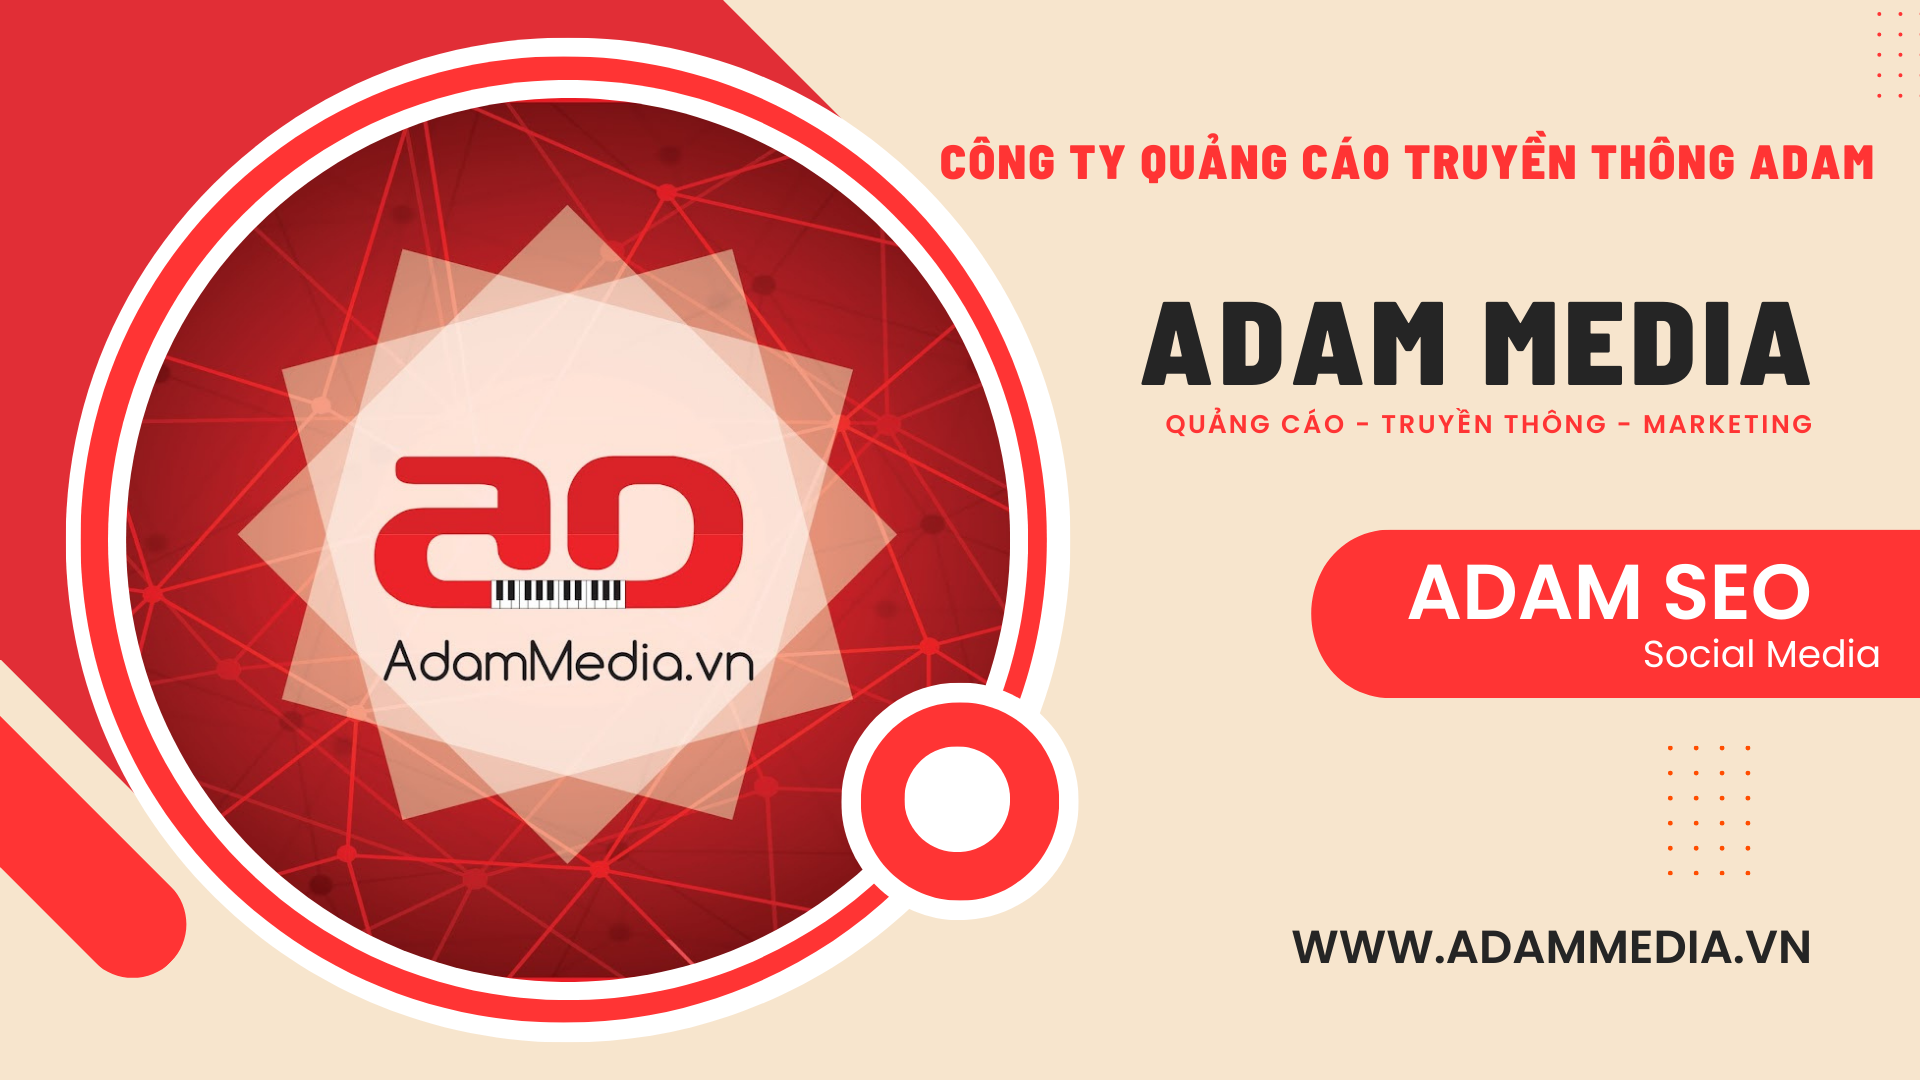 Adam Media - Vũ Ngọc Đảm